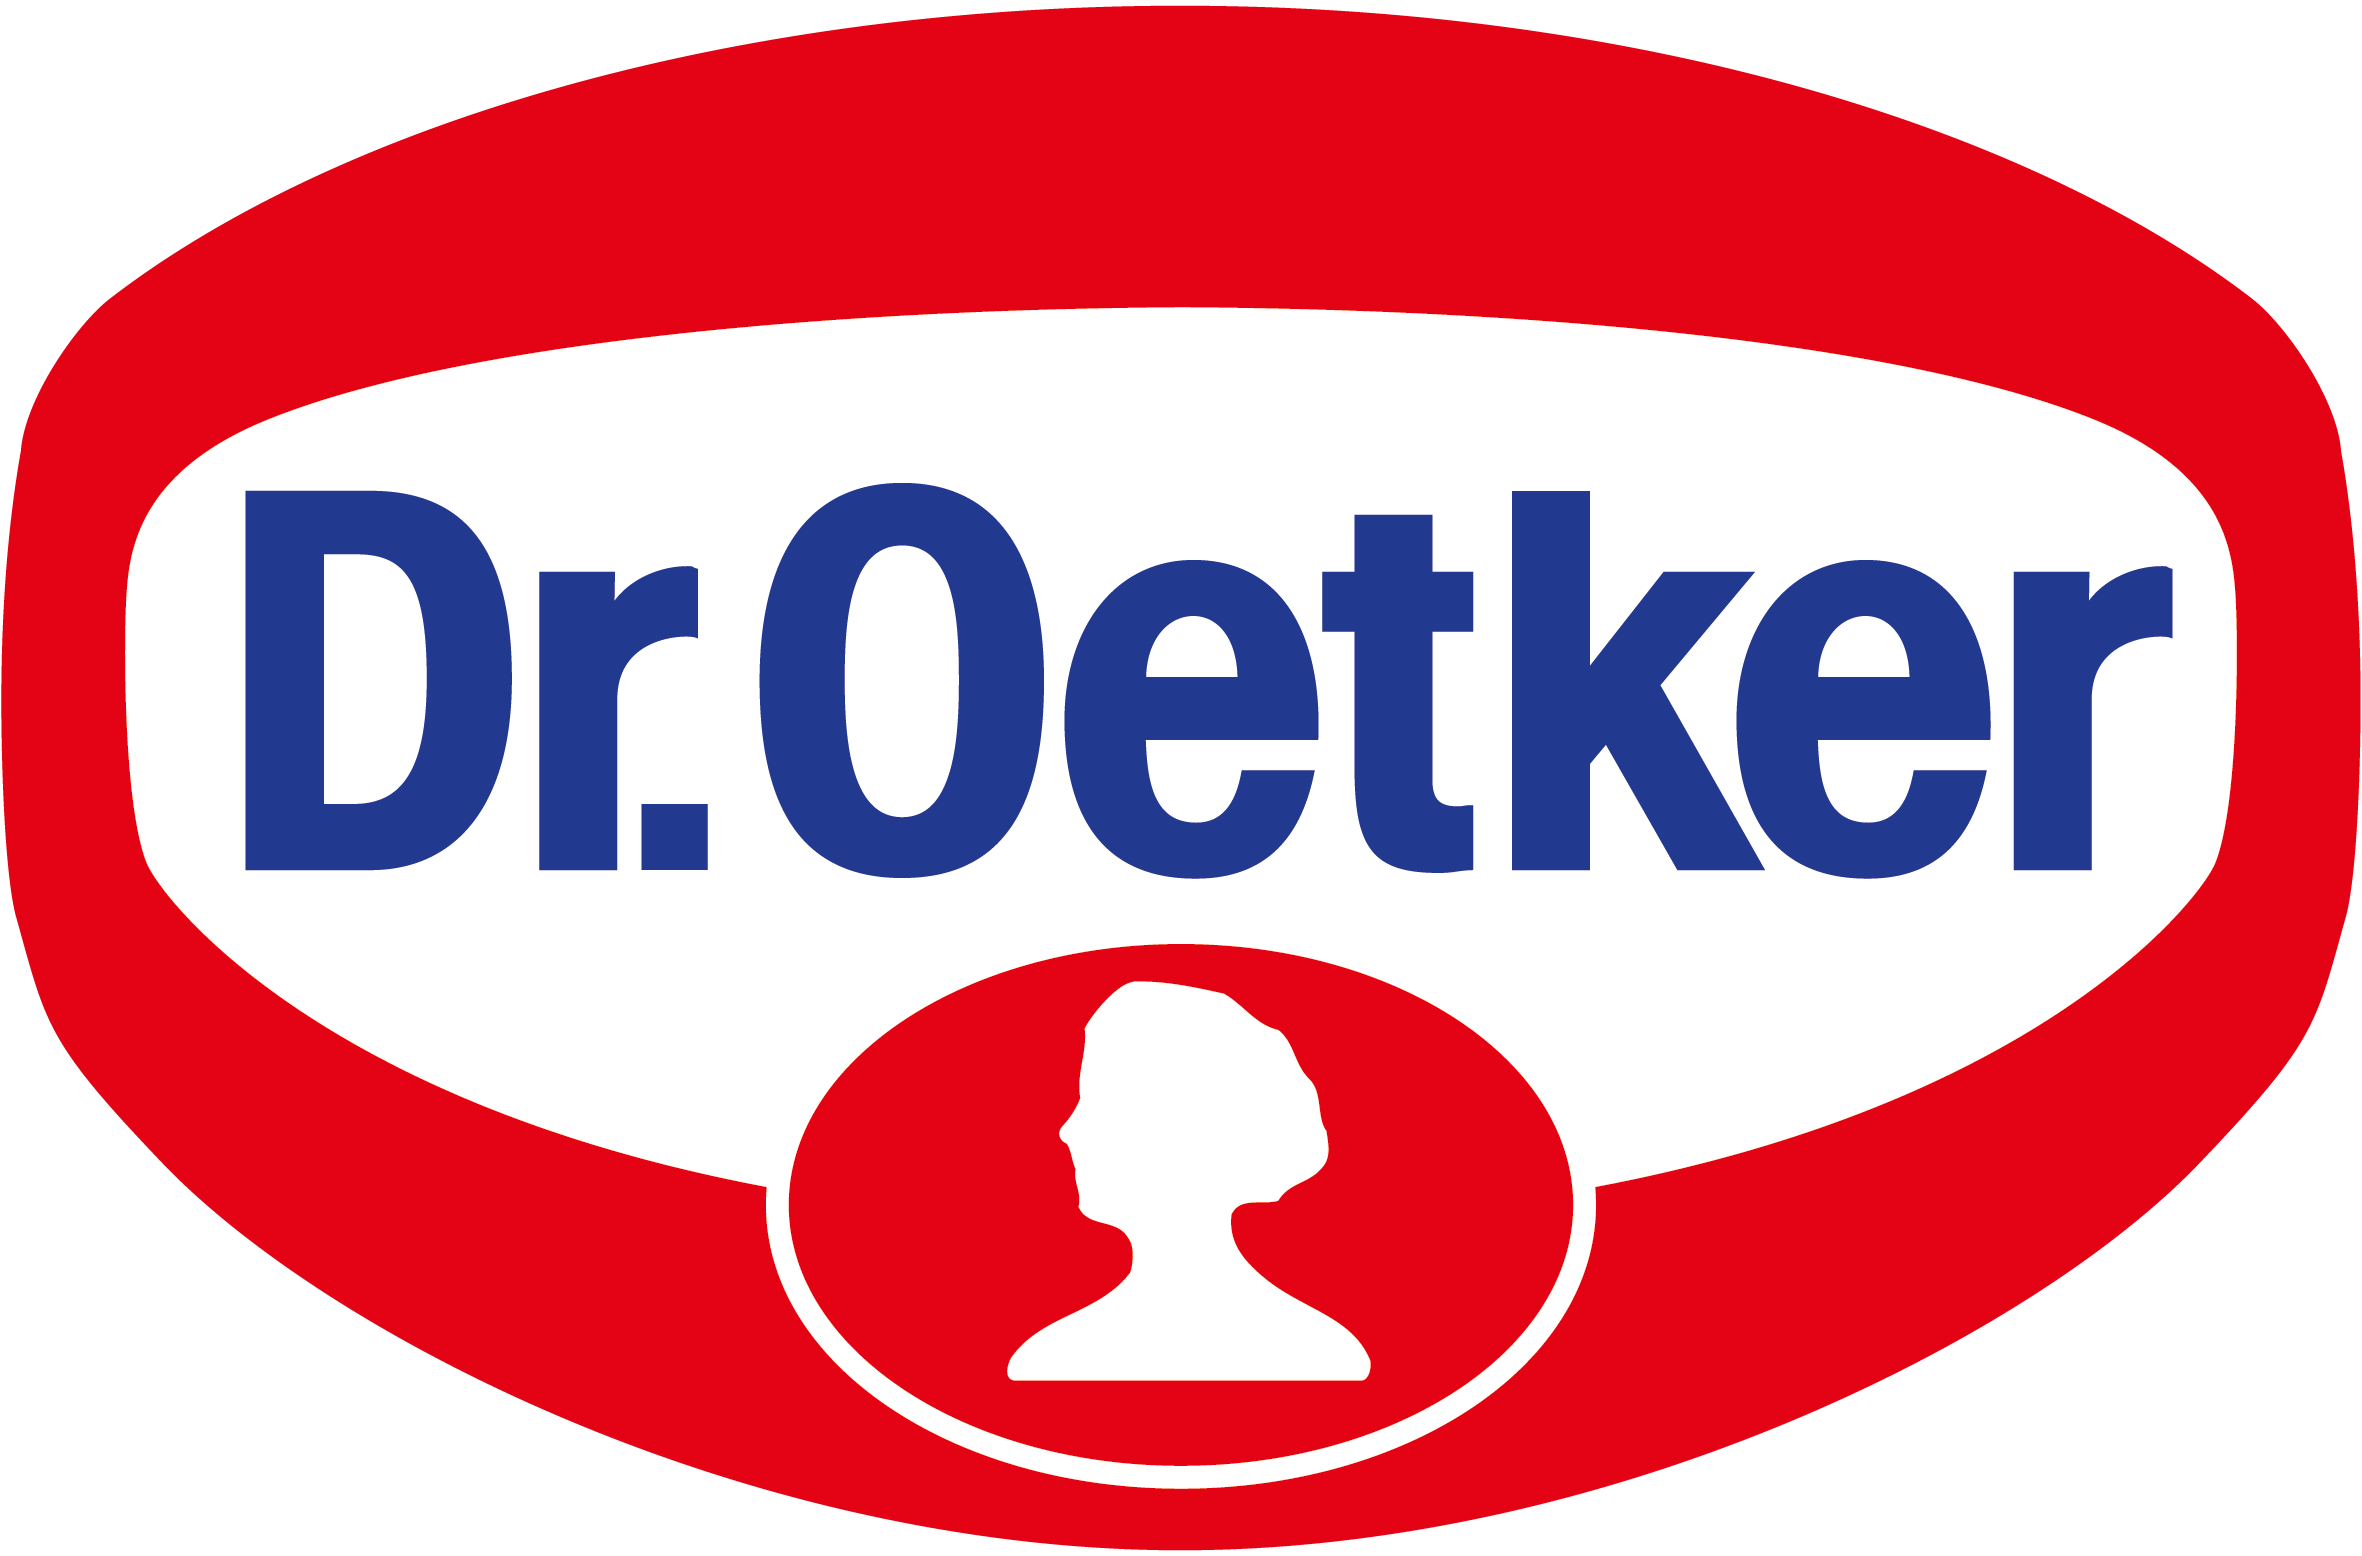 Dr. Oetker Professional konzentriert sich in Zukunft auf das Kerngeschäft